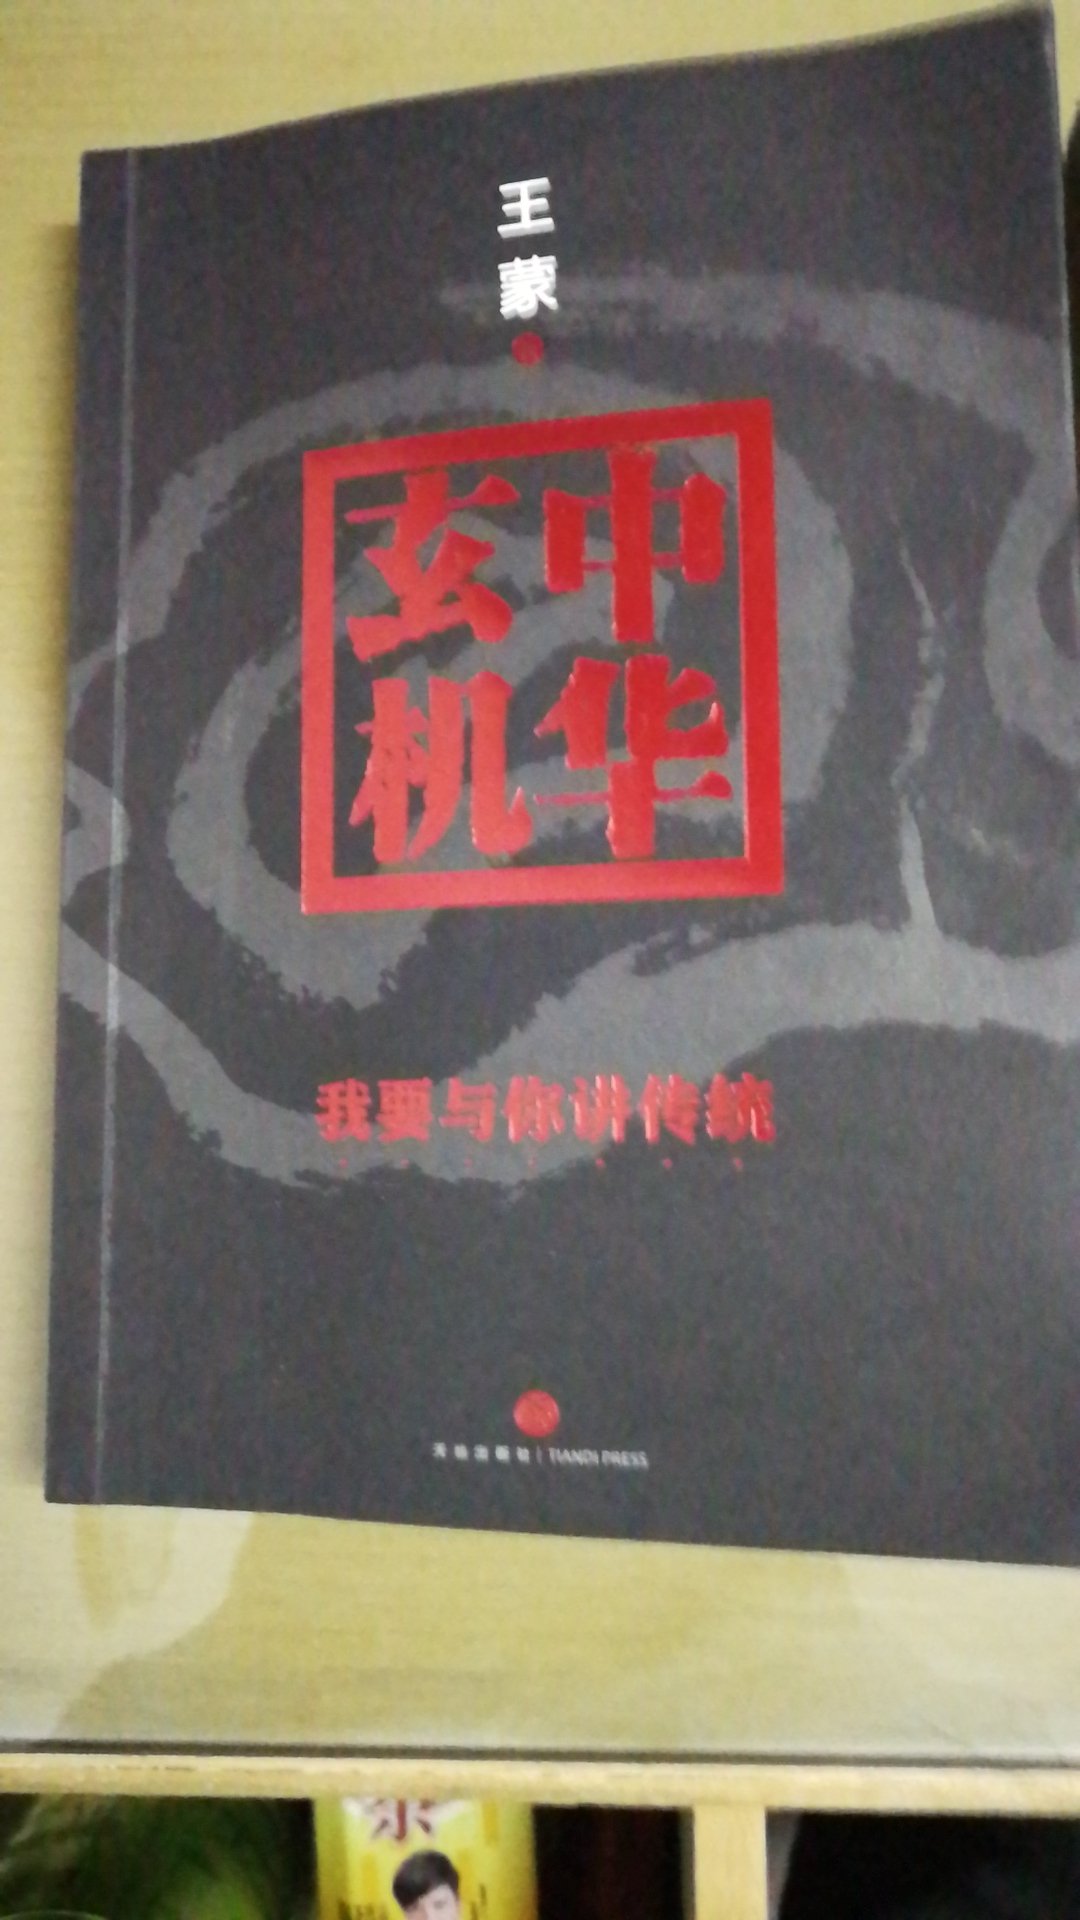 非常喜欢王蒙大师的著作，买了好几本，值得购买，是正品，读者也去看一下